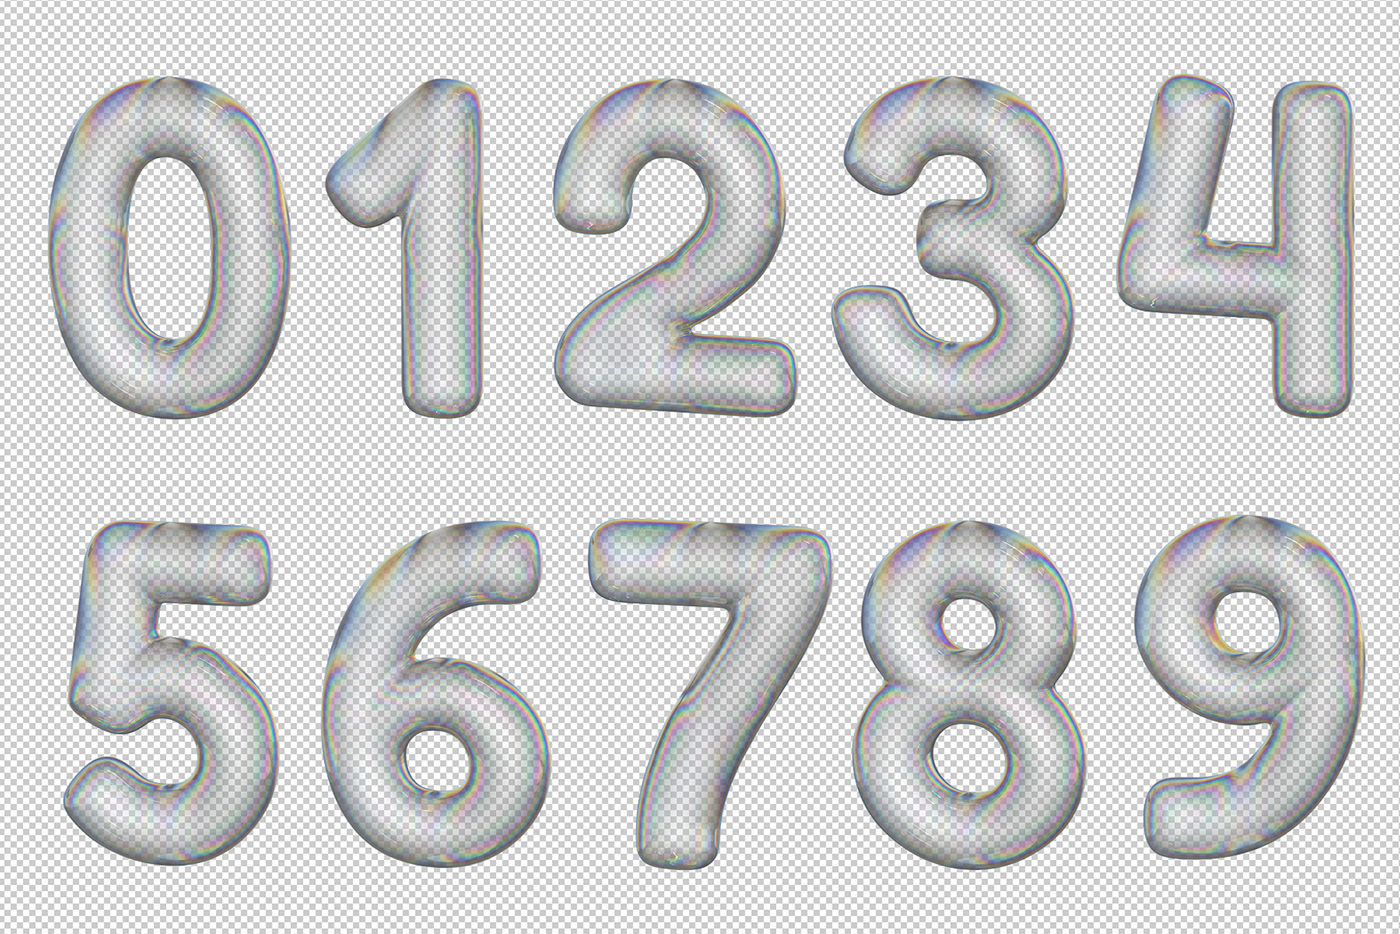 3D alphabet bubble letters text